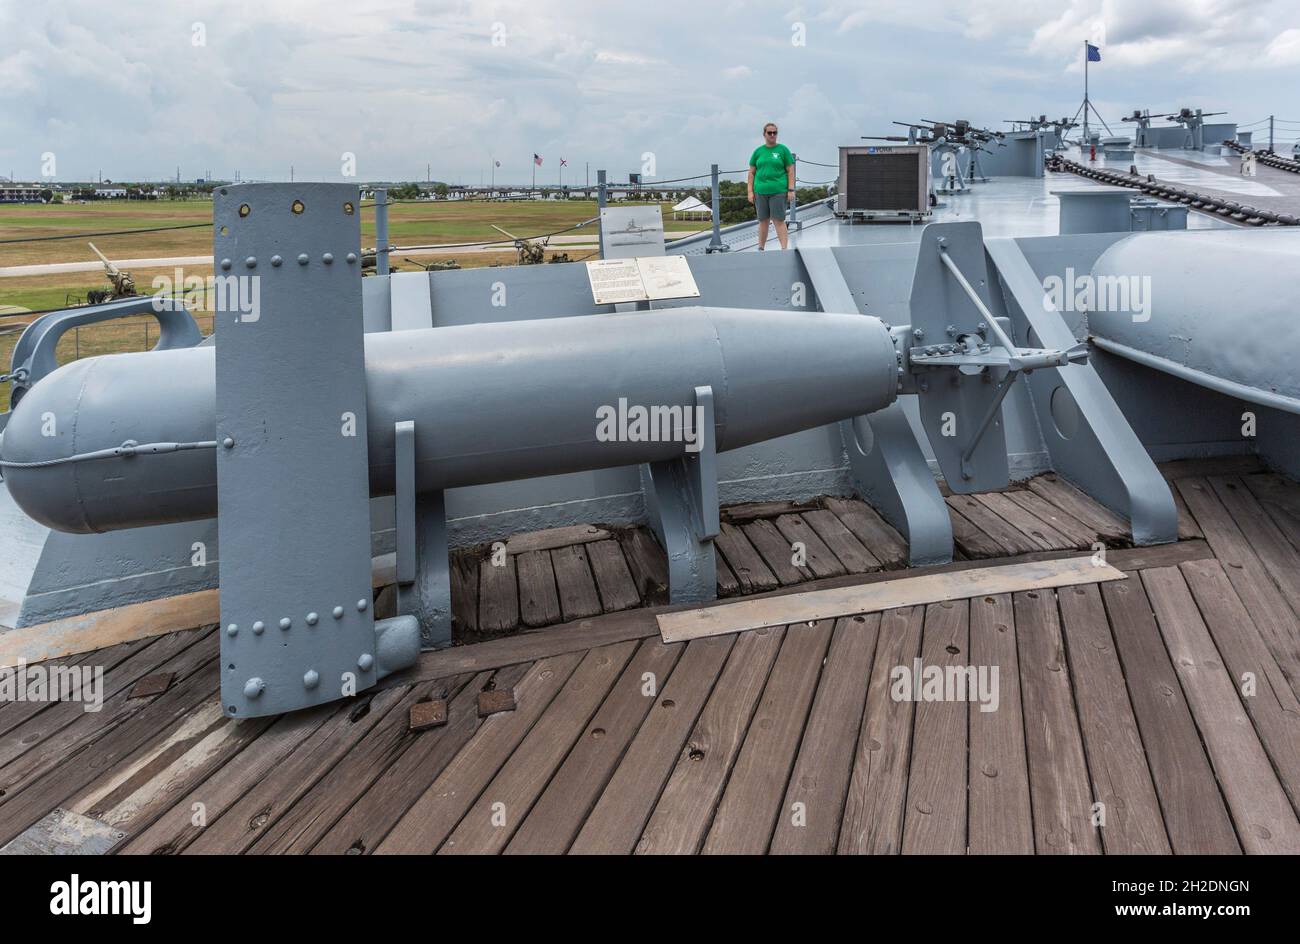 Paravane testata antisommergibile in aliante sul ponte della nave da battaglia museo USS Alabama presso il Battleship Memorial Park di Mobile, Alabama Foto Stock